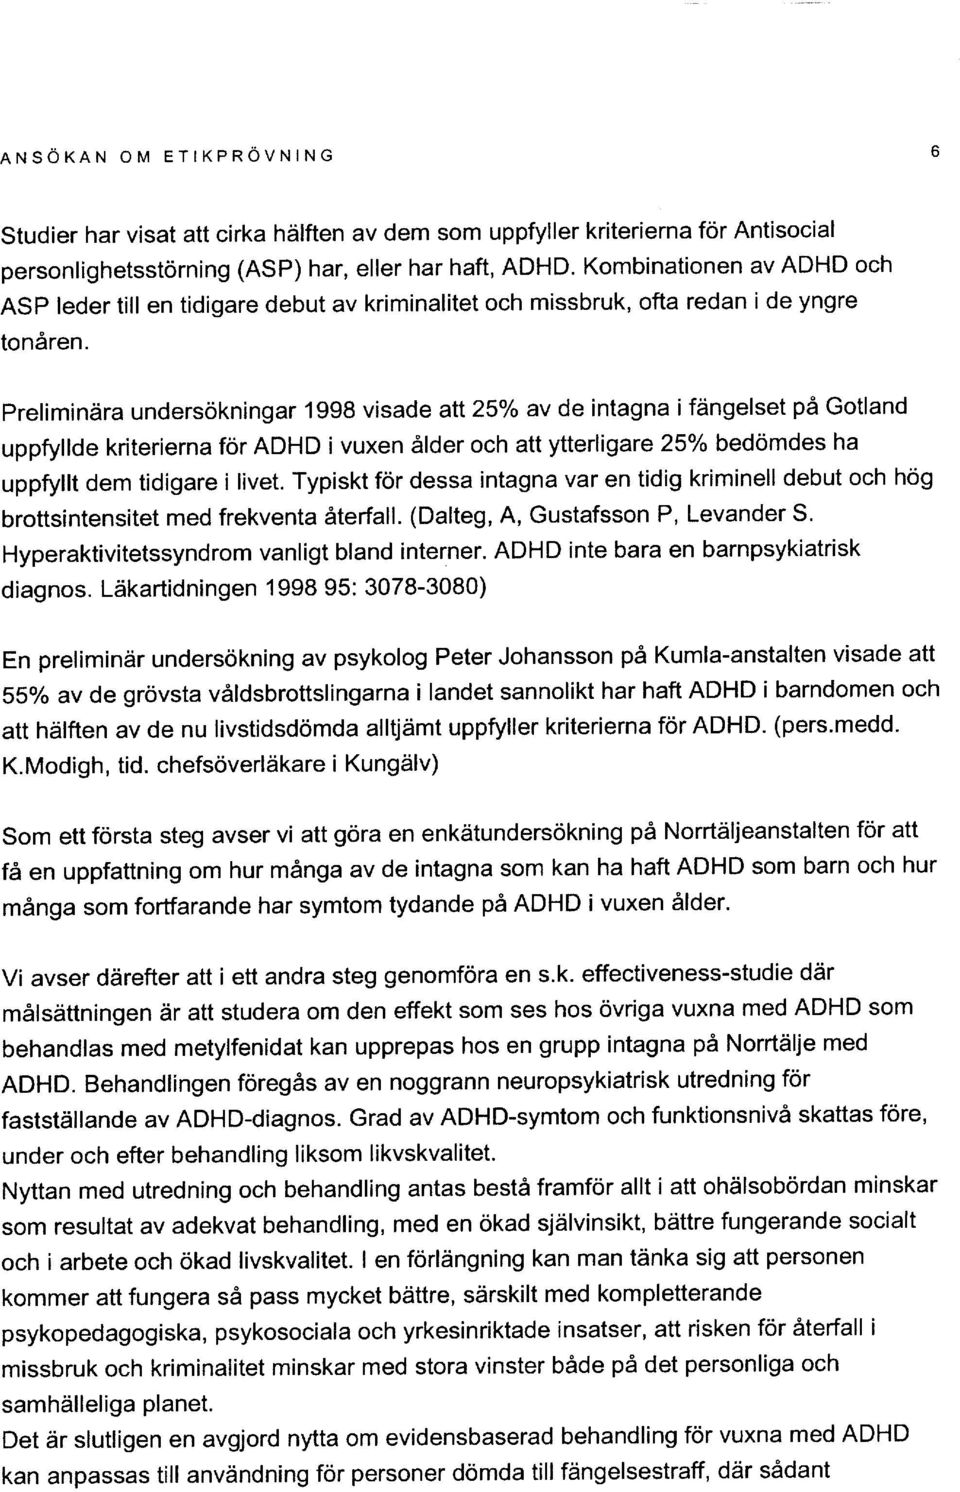 prelimindra undersokningar 1998 visade att 25% av de intagna i fdngelset p6 Gotland uppfyllde kriterierna for ADHD i vuxen dlder och att ytterligare21o/o bedomdes ha uppfyllt dem tidigare i livet.